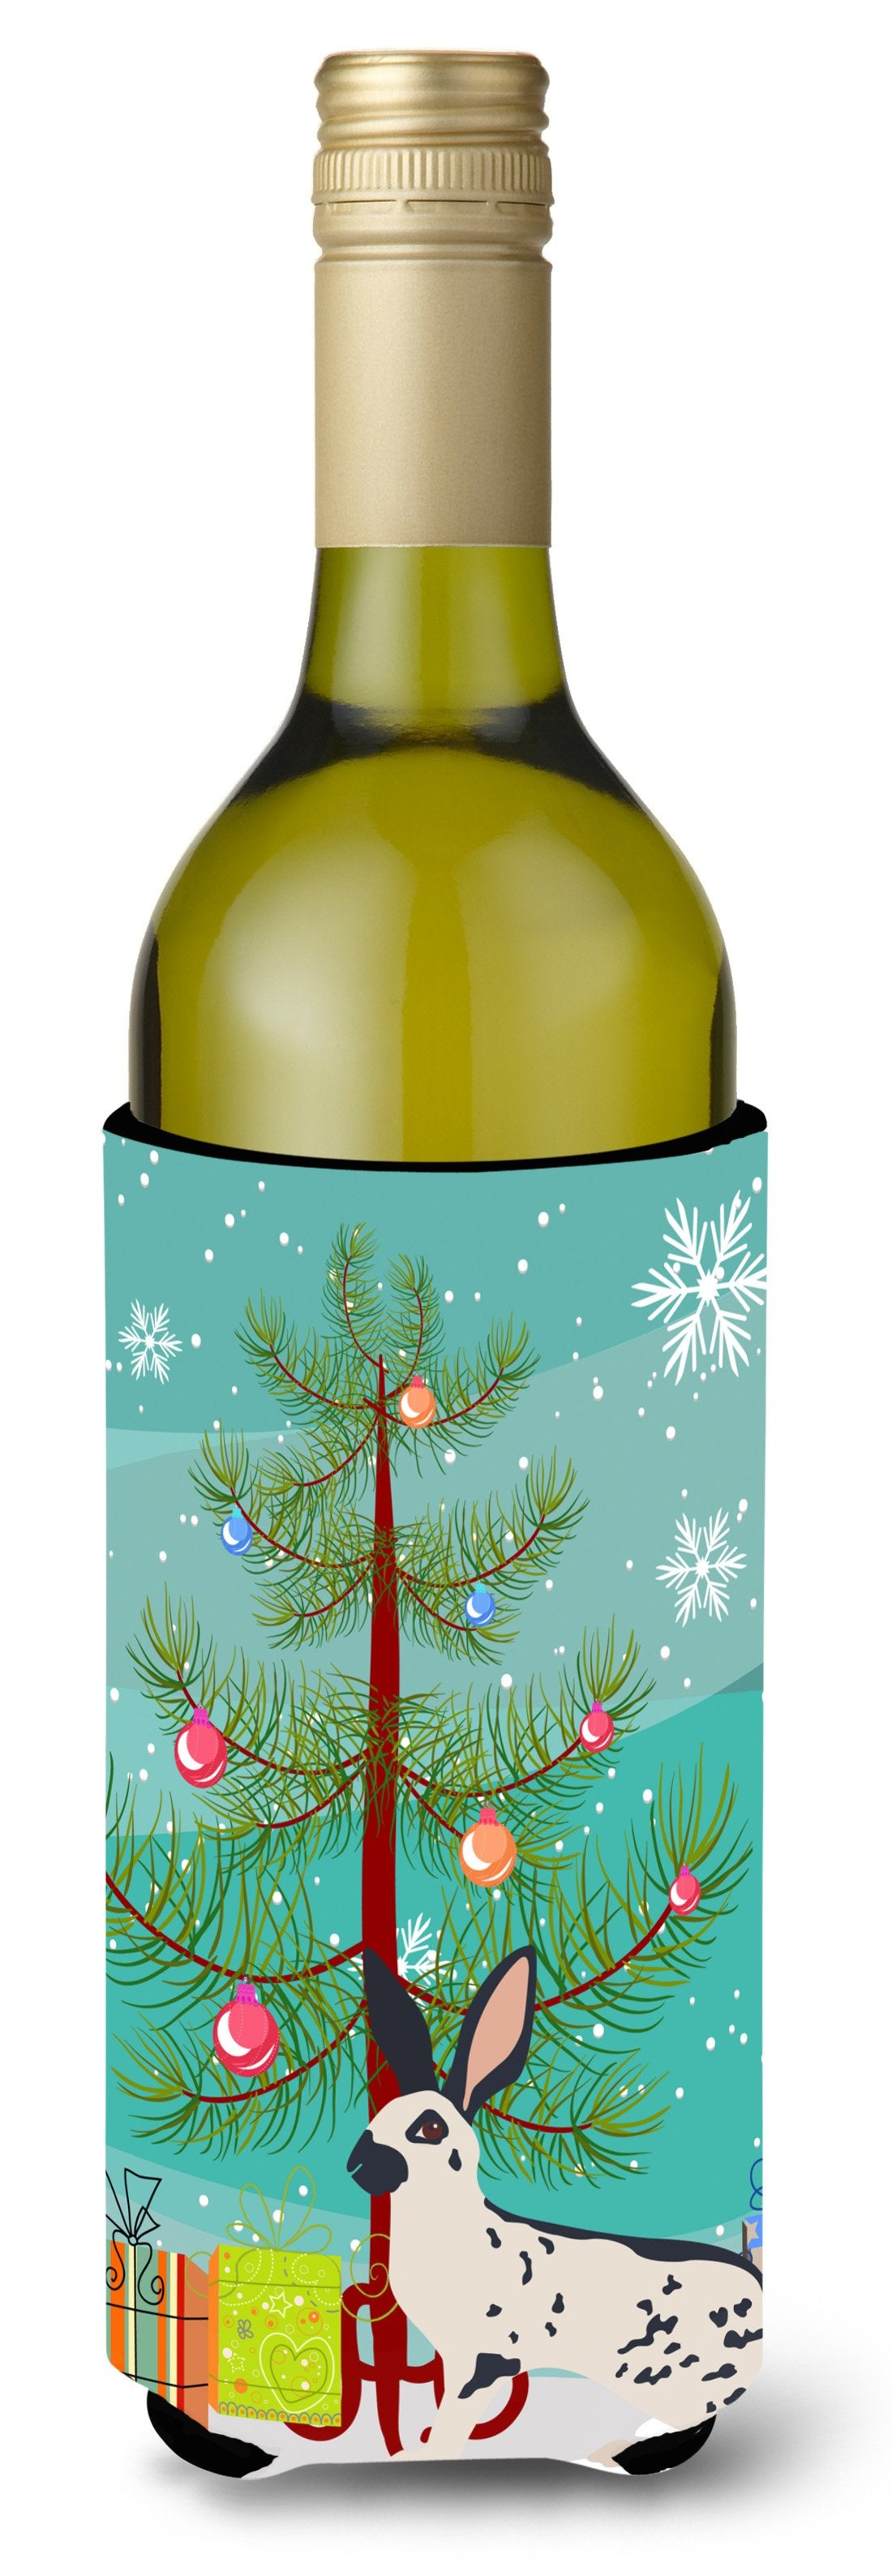 English Spot Rabbit Christmas Wine Bottle Beverge Insulator Hugger BB9328LITERK by Caroline's Treasures